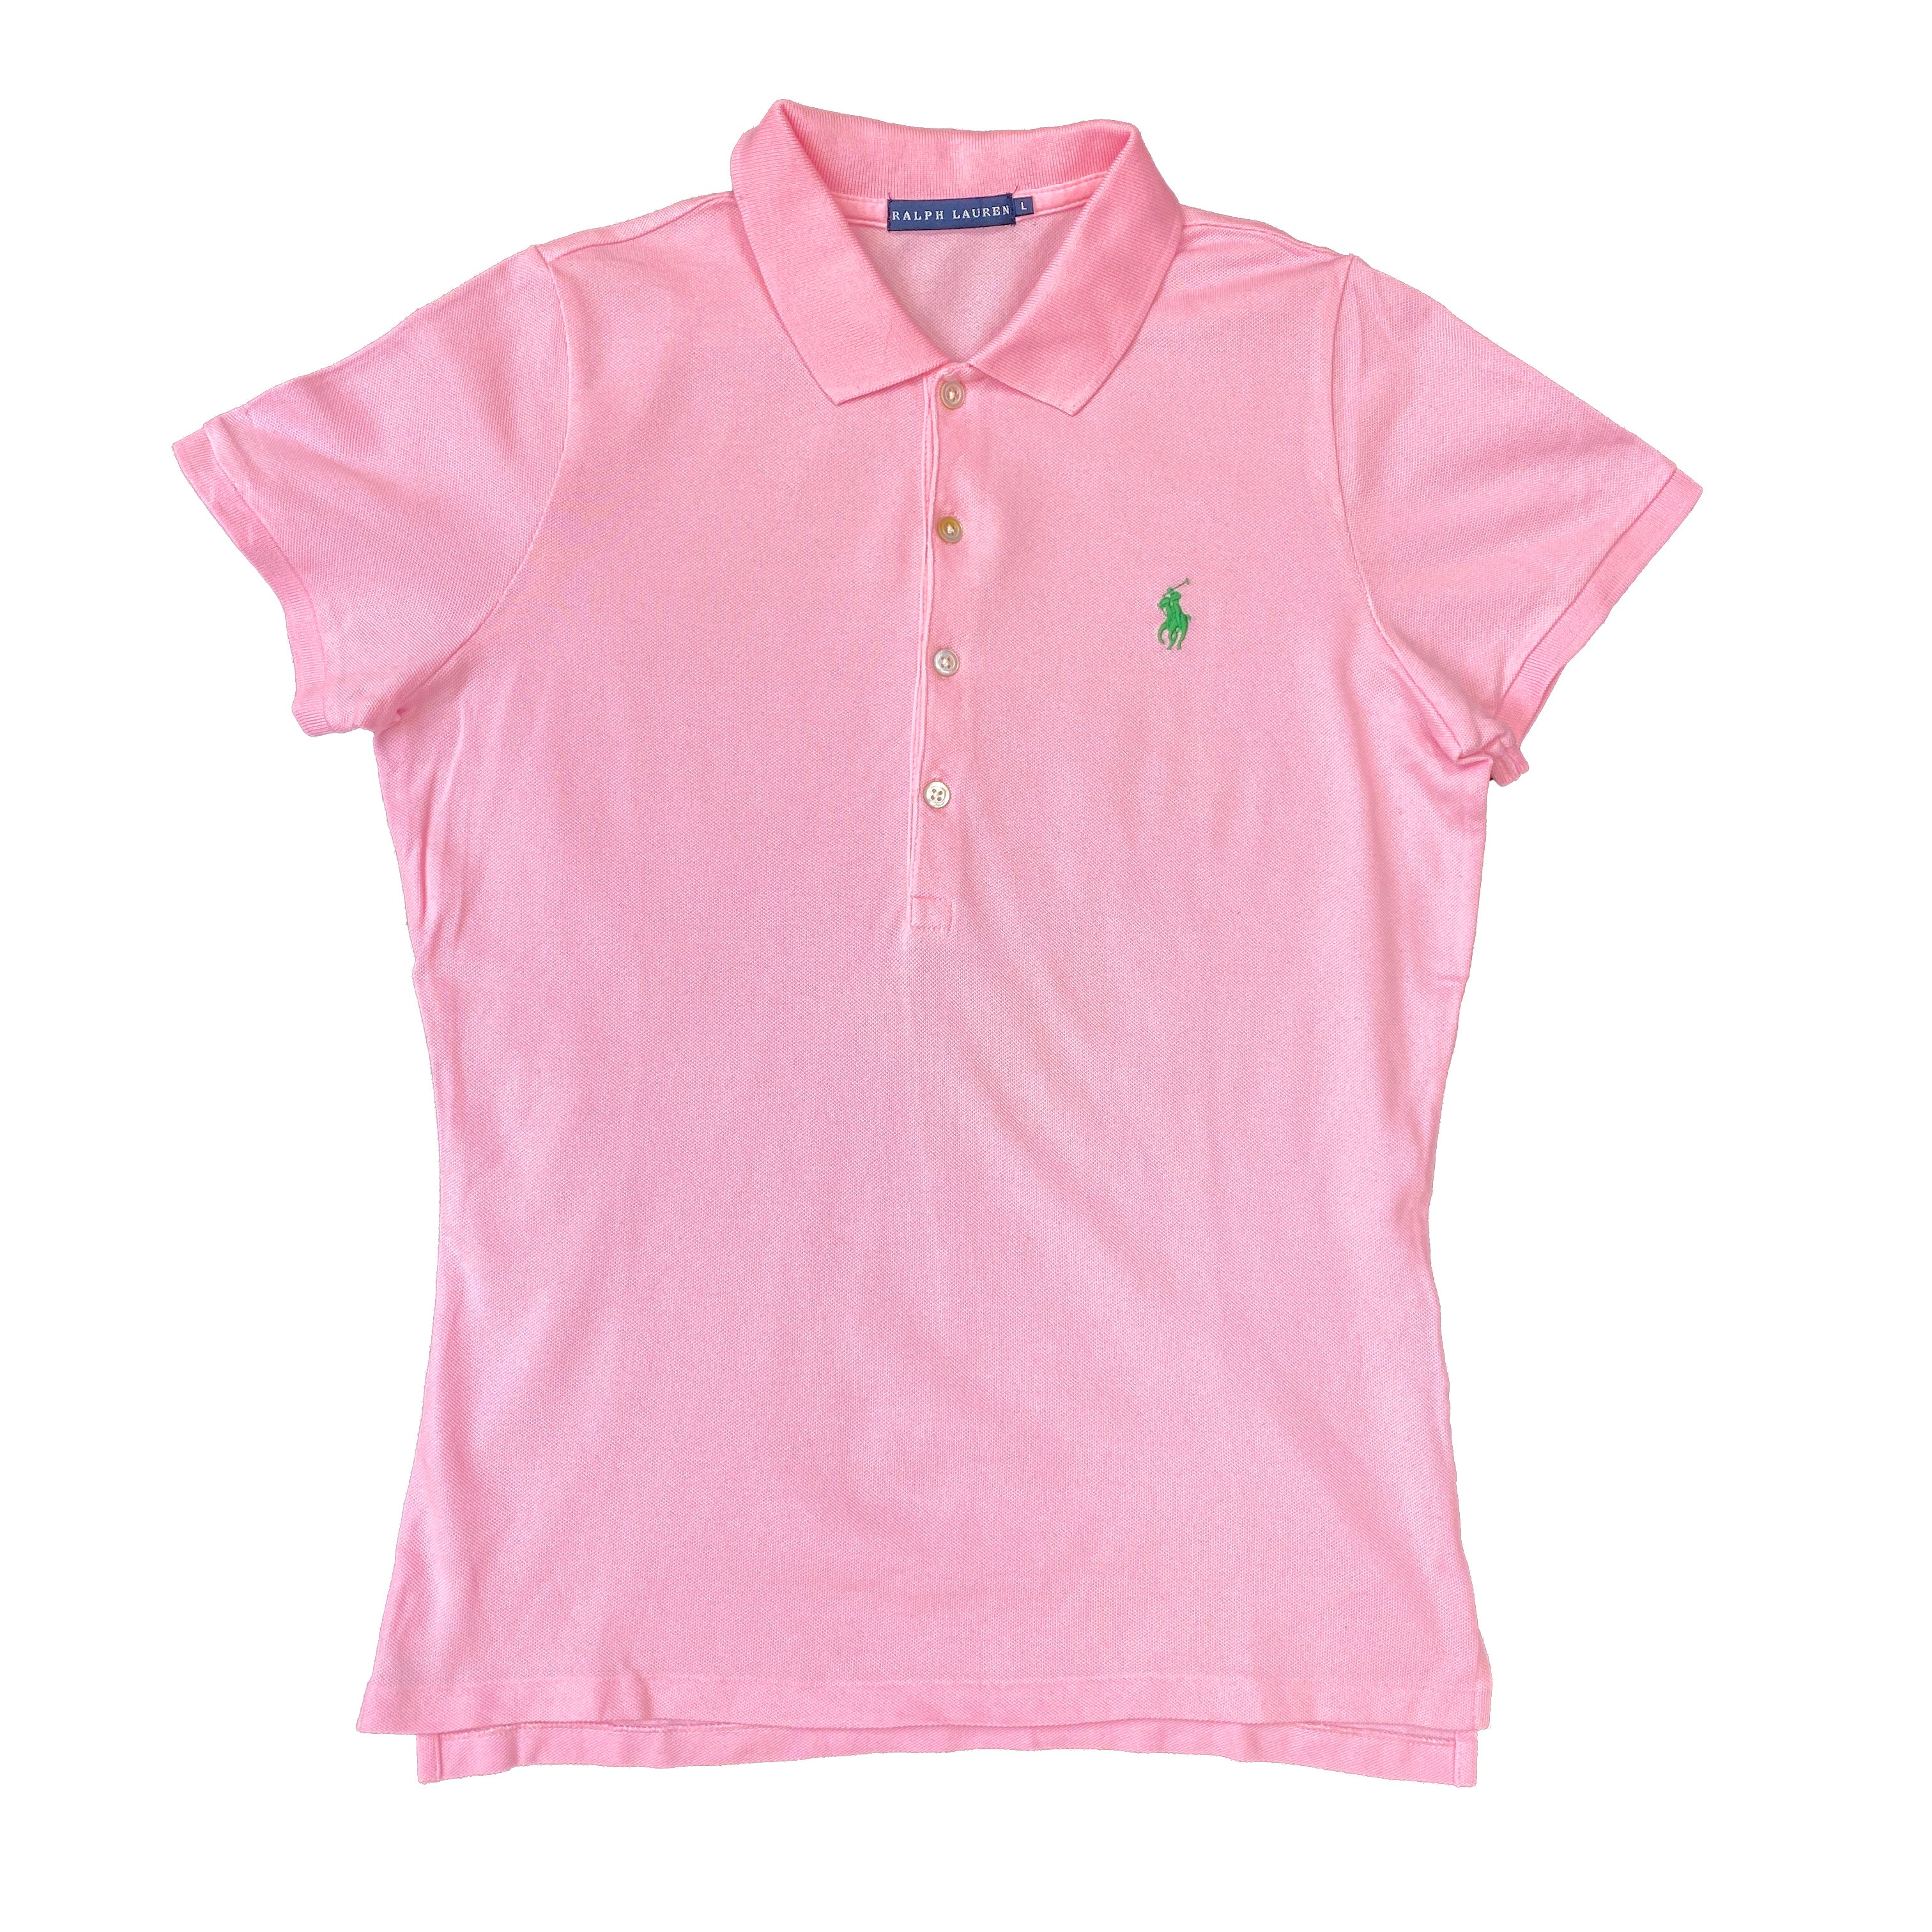 Ralph Lauren Pink Polo Shirt